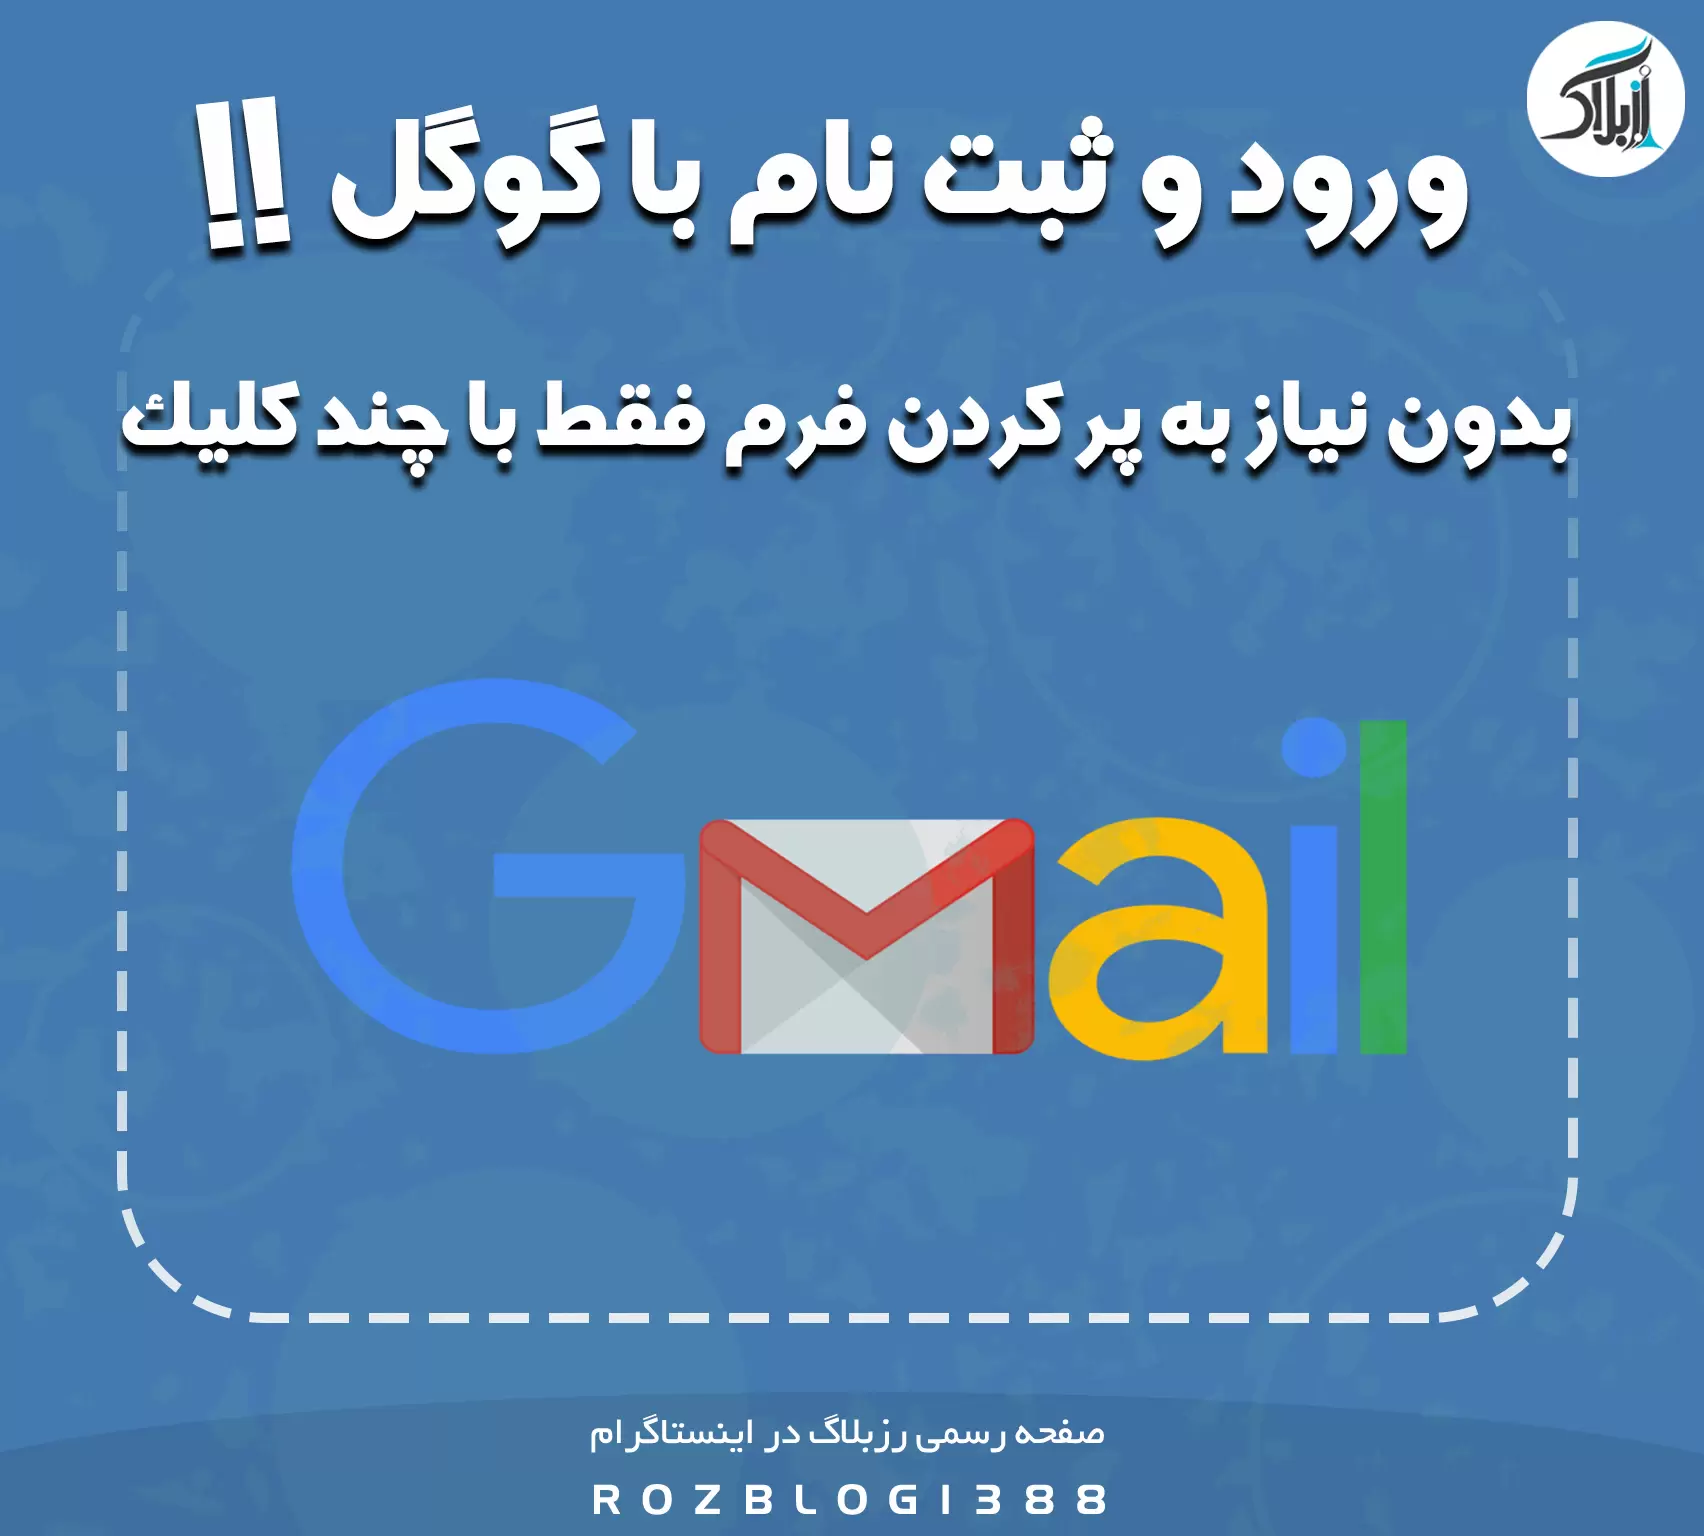 امکان ثبت نام و ورود کاربران در سایت با گوگل (جیمیل)